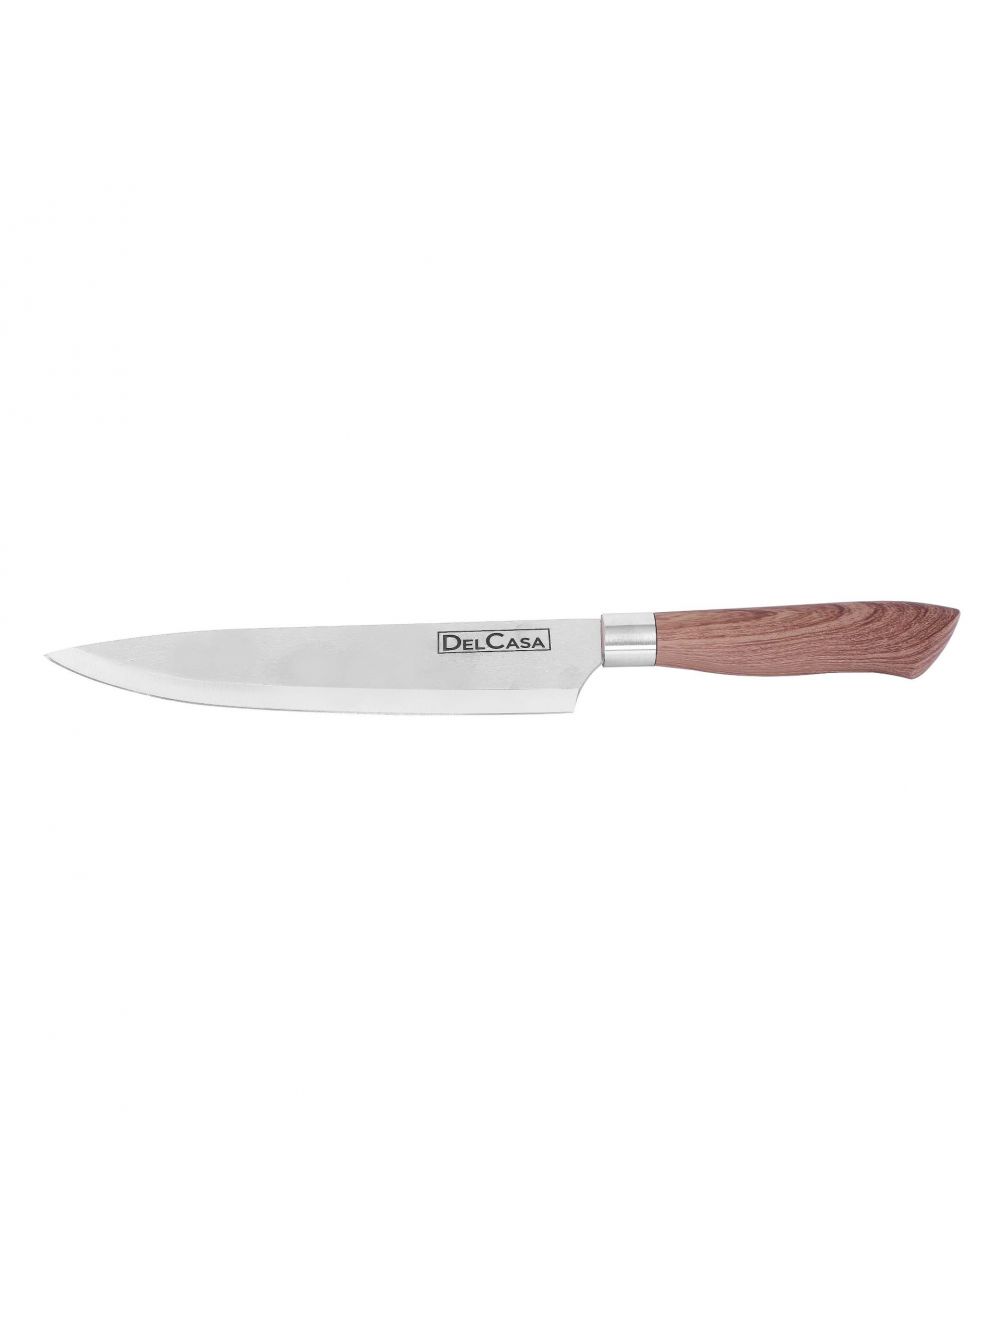 Delcasa Chef Knife 8